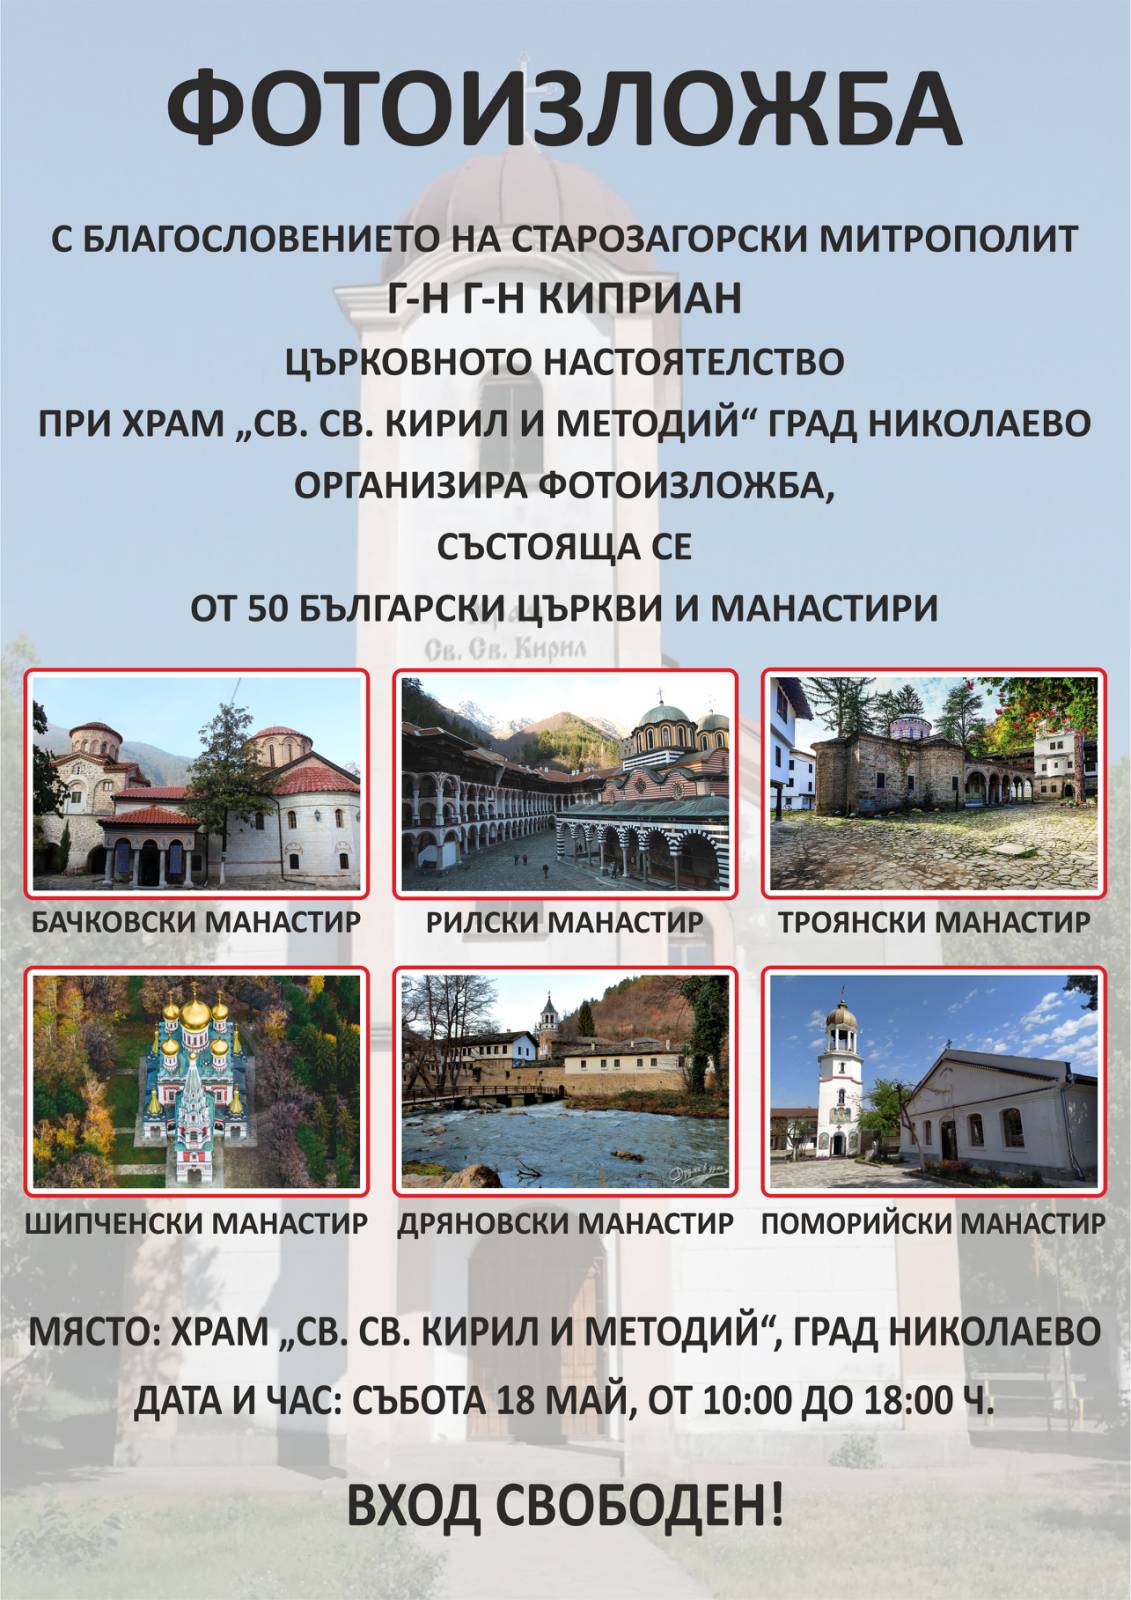 Снимка на събитие Фотоизложба на 50 български църкви и манастири